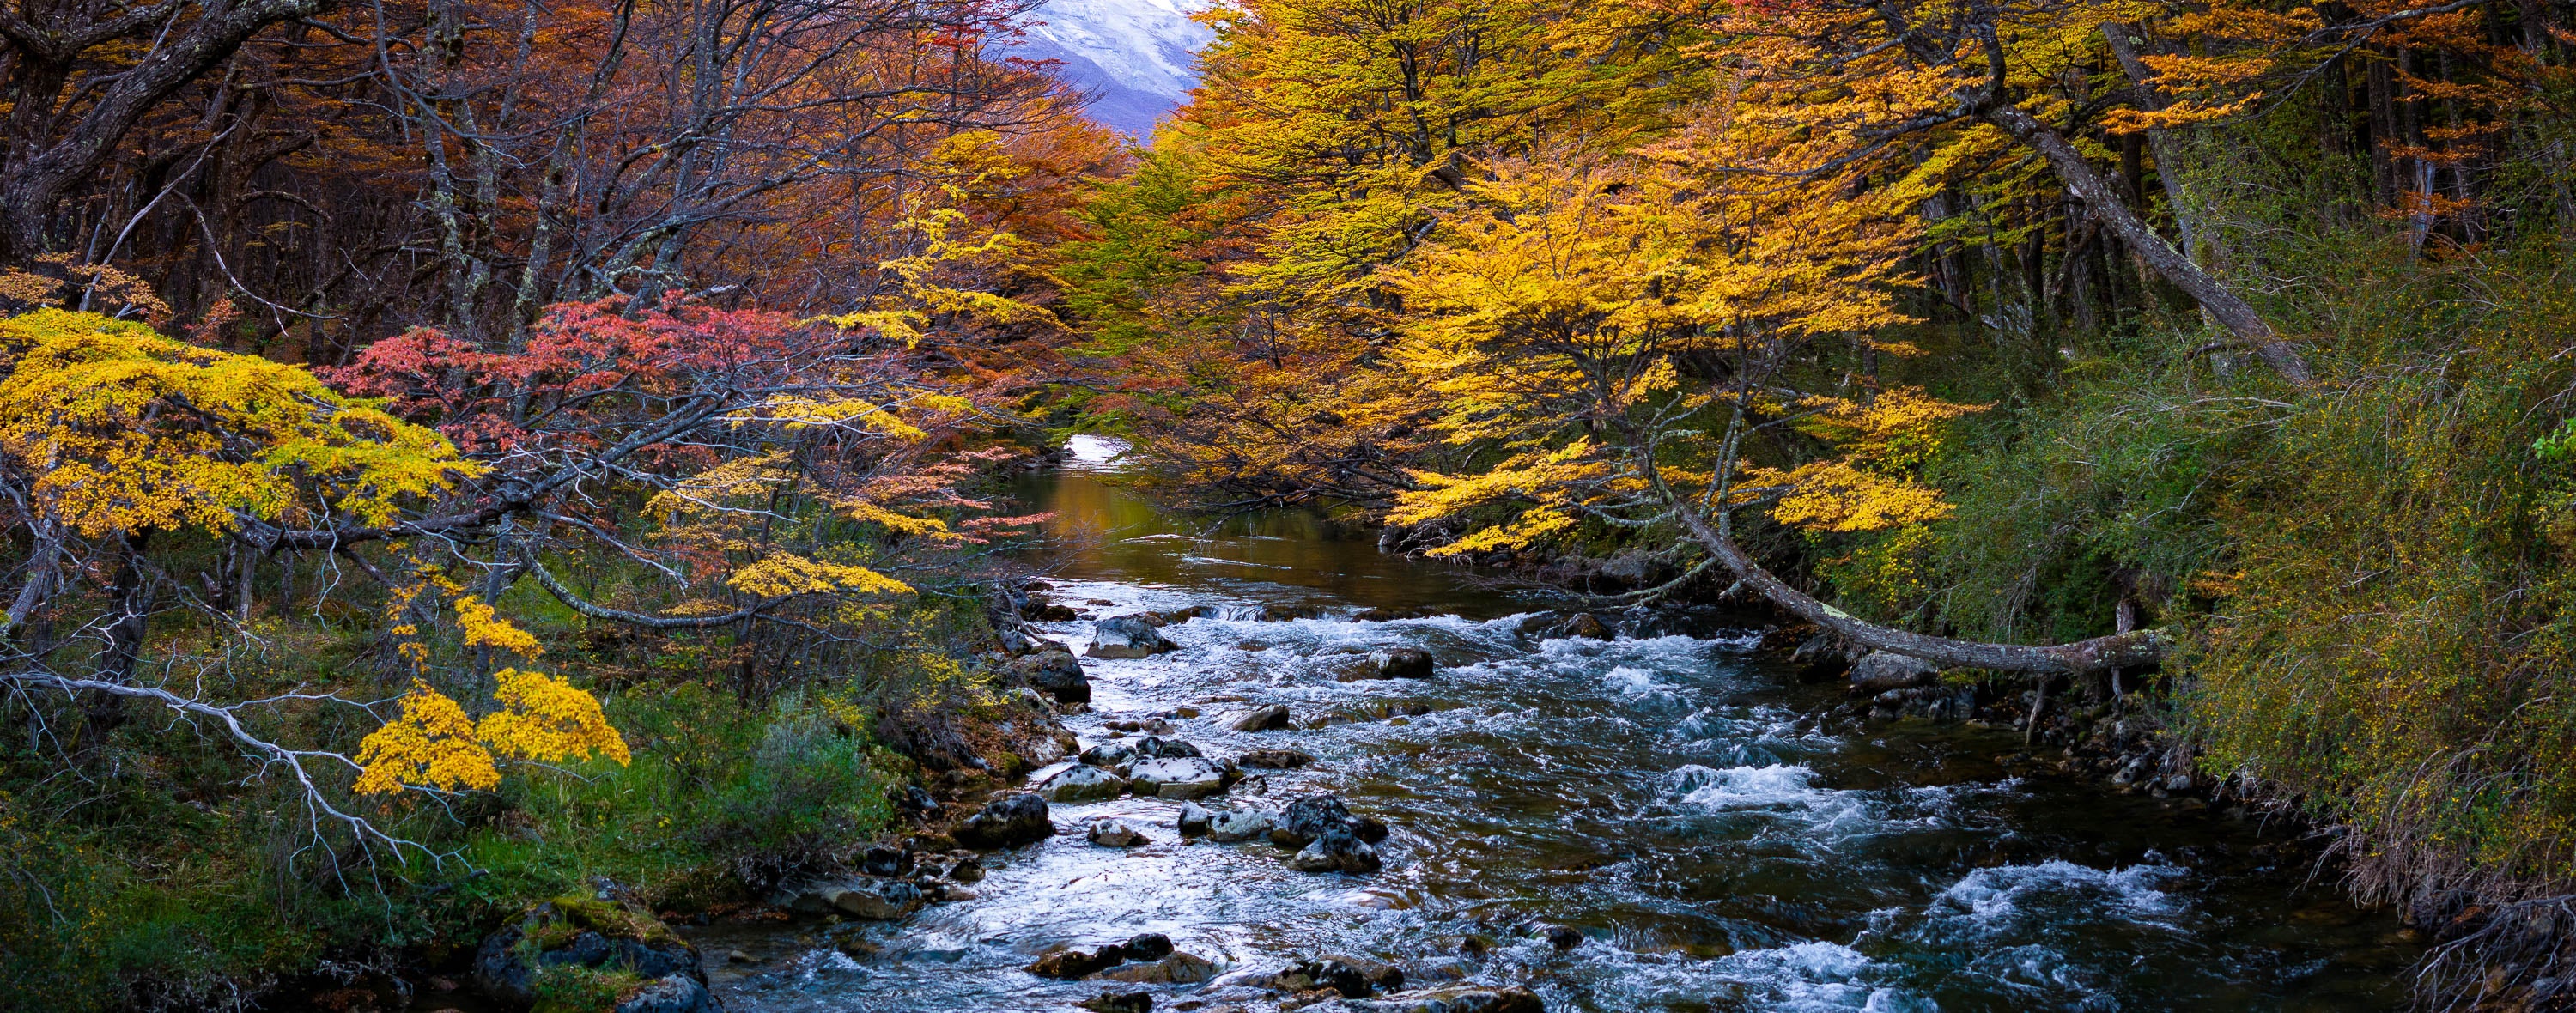 Patagonia Stream in autumn, Argentina